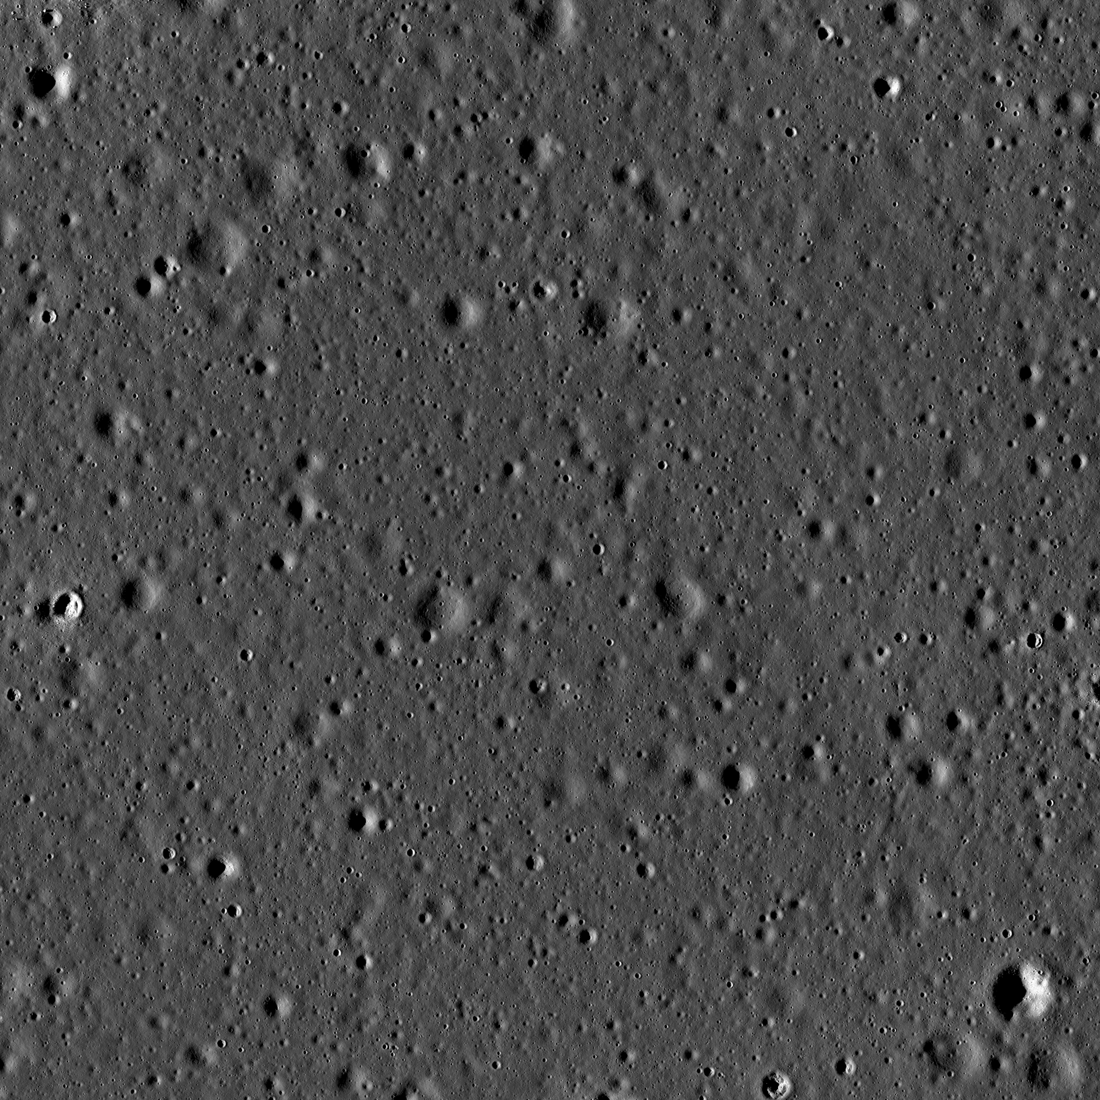 Apollo 11 Oceanus Procellarum landing site (Site 5)